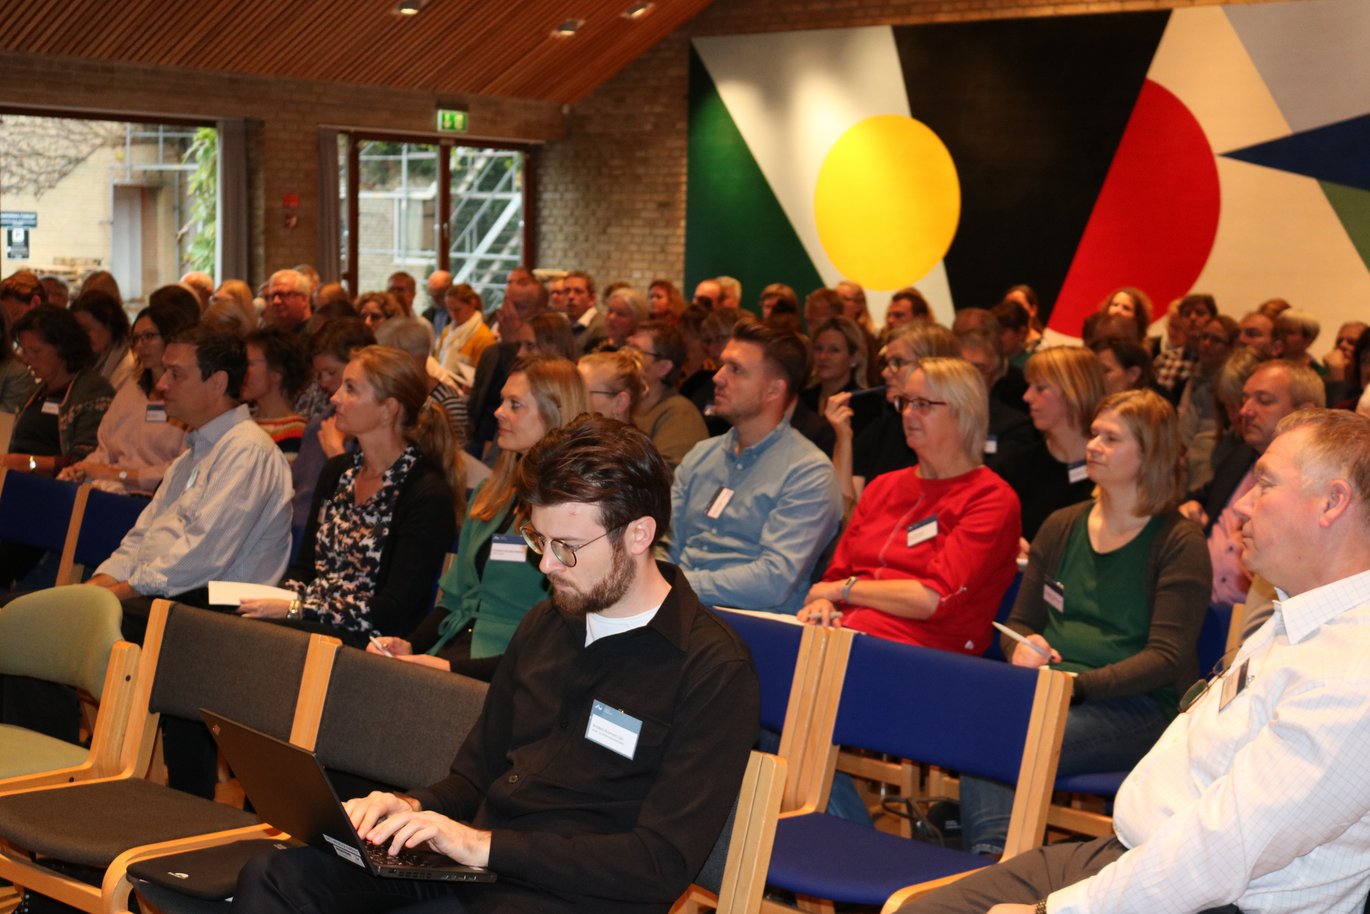 Der var fuldt hus med 150 deltagere til årets ViD-konference i Aarhus. Foto: Linda S. Sørensen.